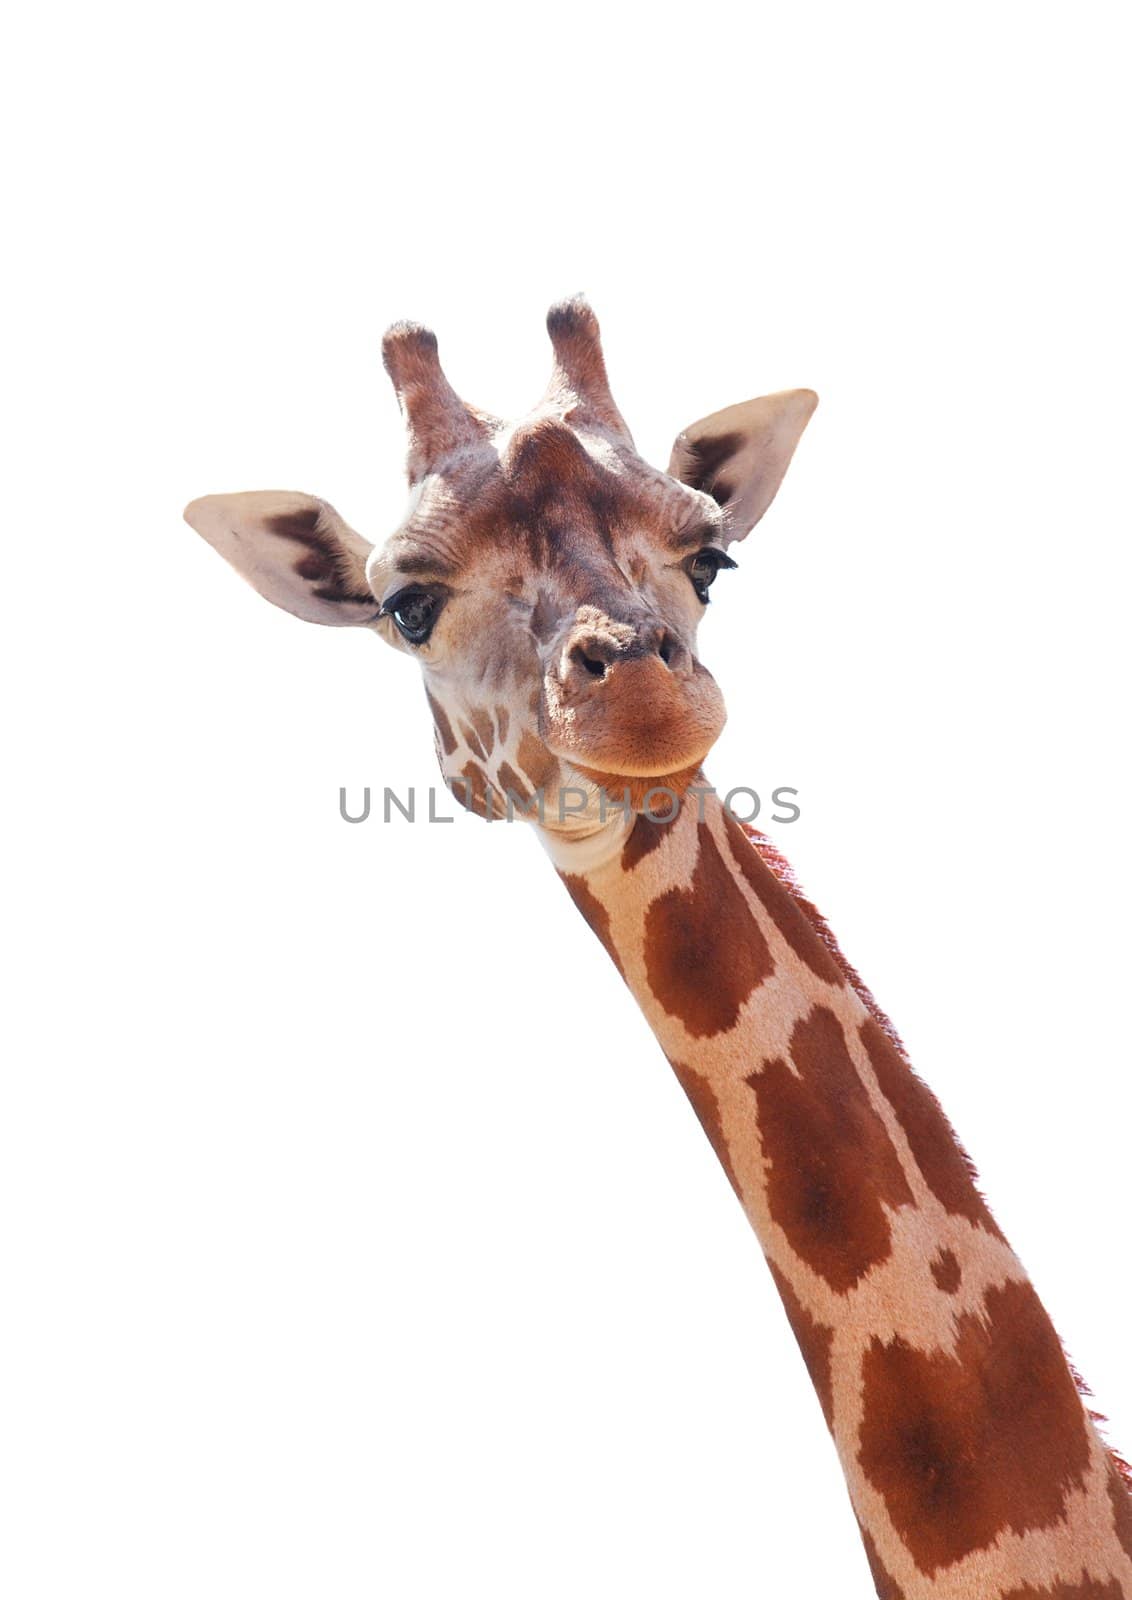 Giraffe by Gudella